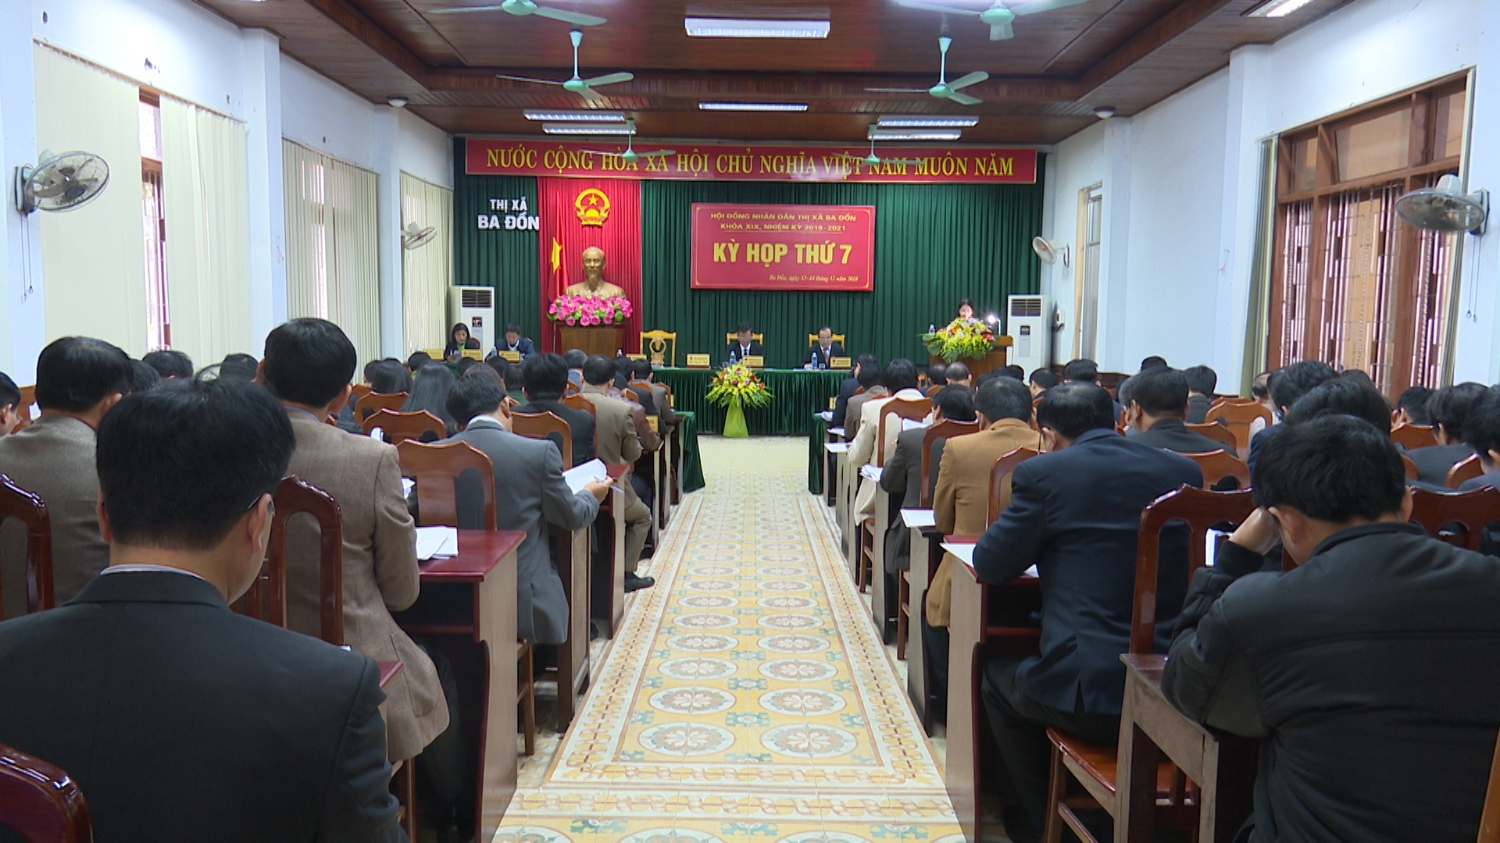 HĐND thị xã Ba Đồn khóa XIX tổ chức thành công kỳ họp thứ 7.